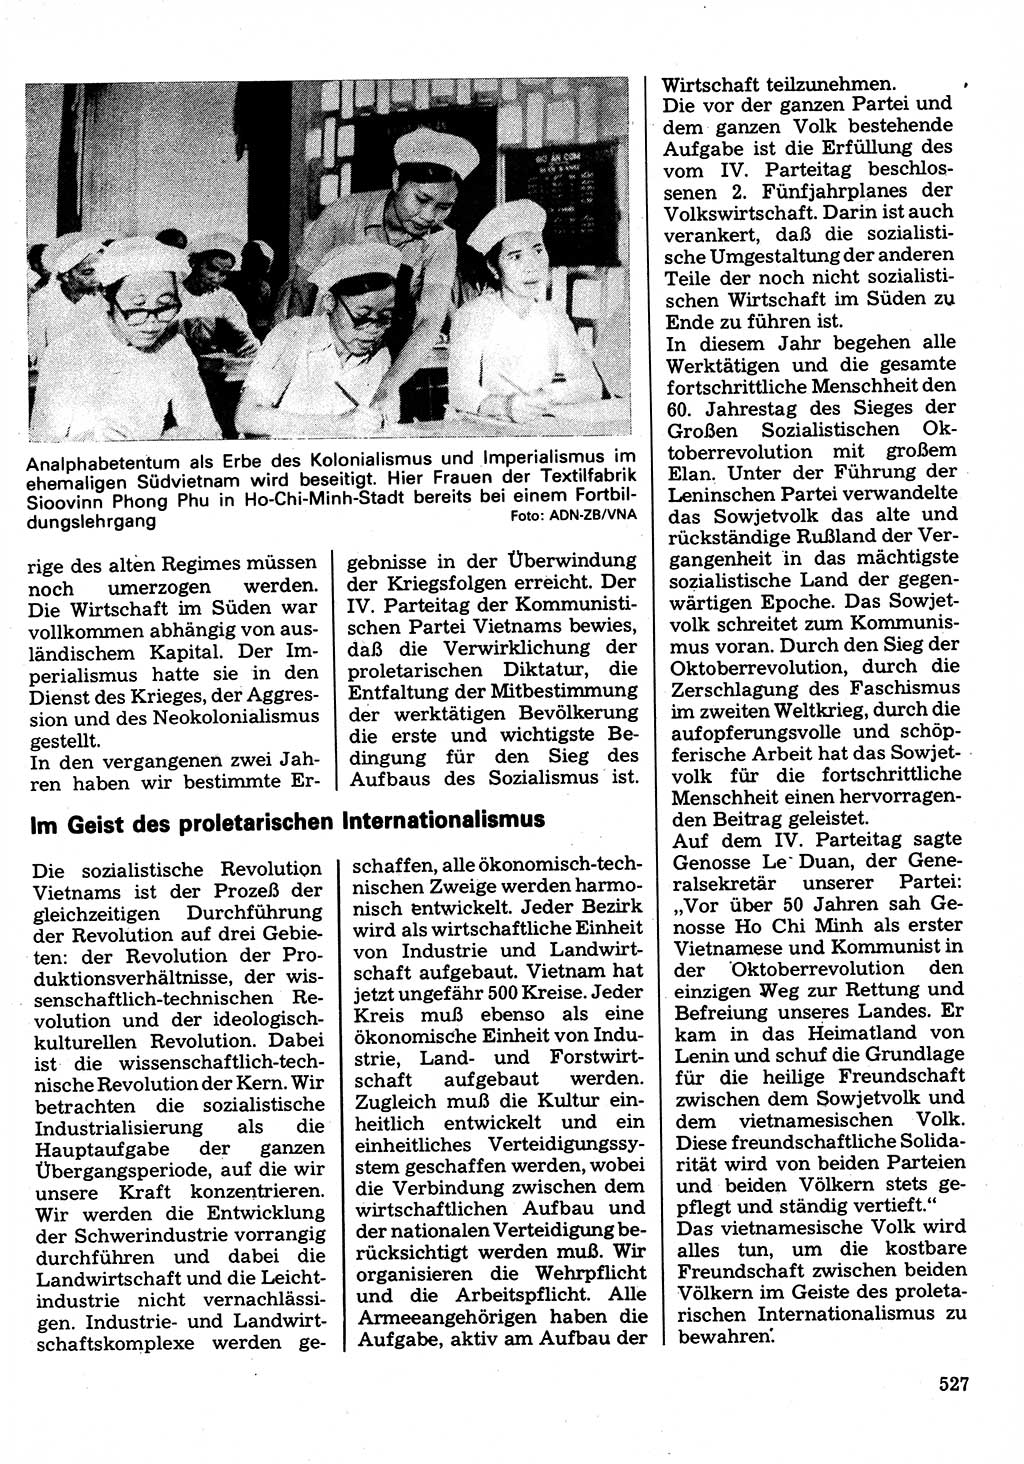 Neuer Weg (NW), Organ des Zentralkomitees (ZK) der SED (Sozialistische Einheitspartei Deutschlands) für Fragen des Parteilebens, 32. Jahrgang [Deutsche Demokratische Republik (DDR)] 1977, Seite 527 (NW ZK SED DDR 1977, S. 527)